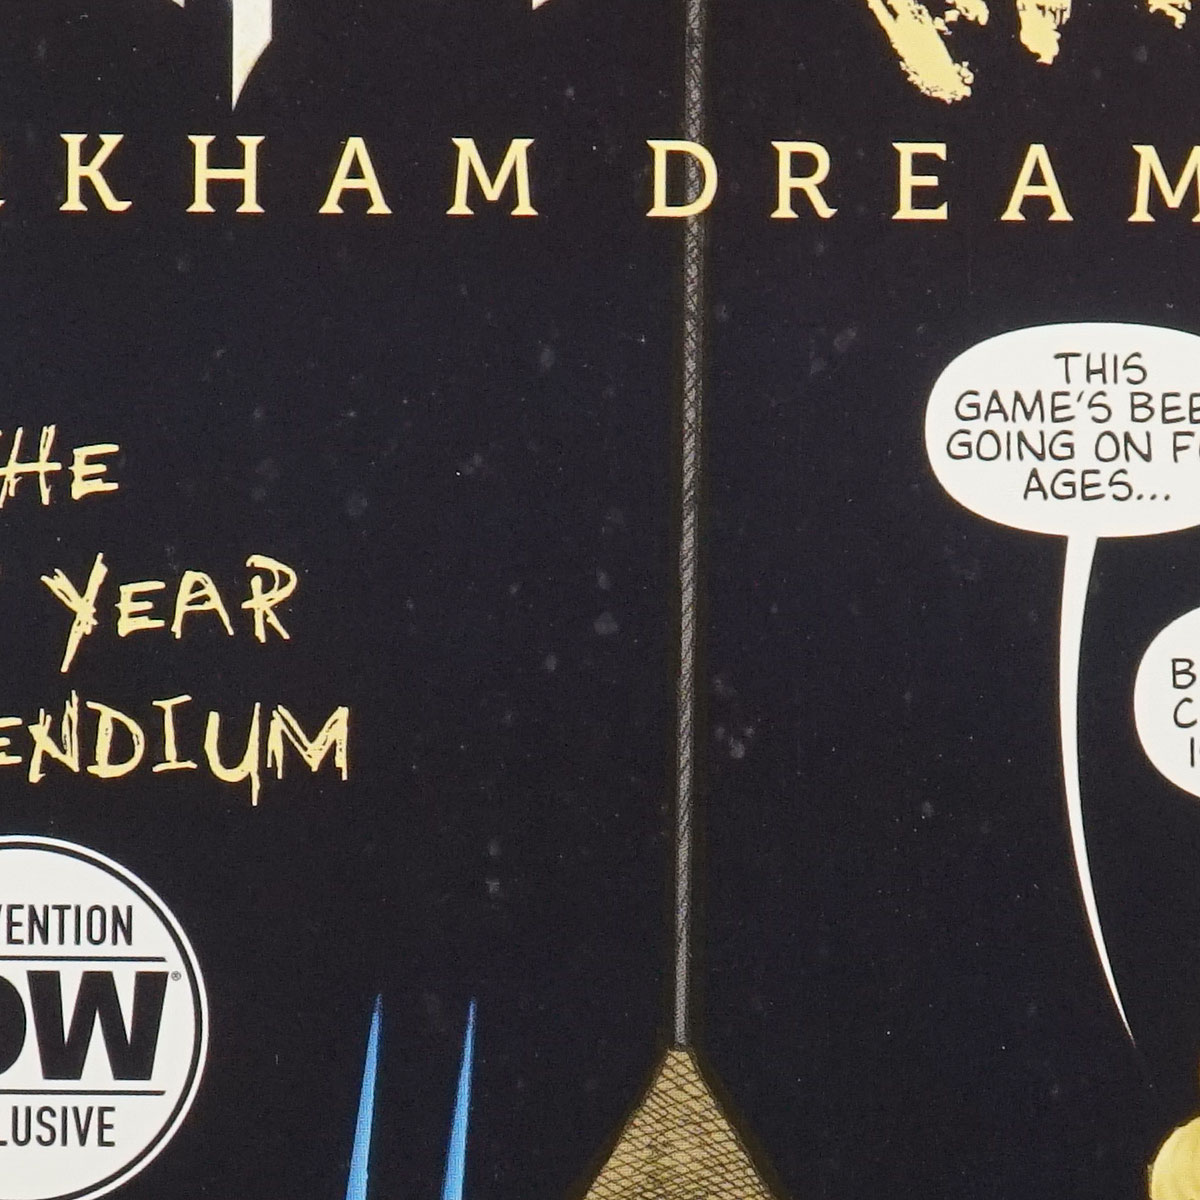 BATMAN THE MAXX ARKHAM DREAMS Lost Year Compendium IDW Comics NYCC 2020 231121A